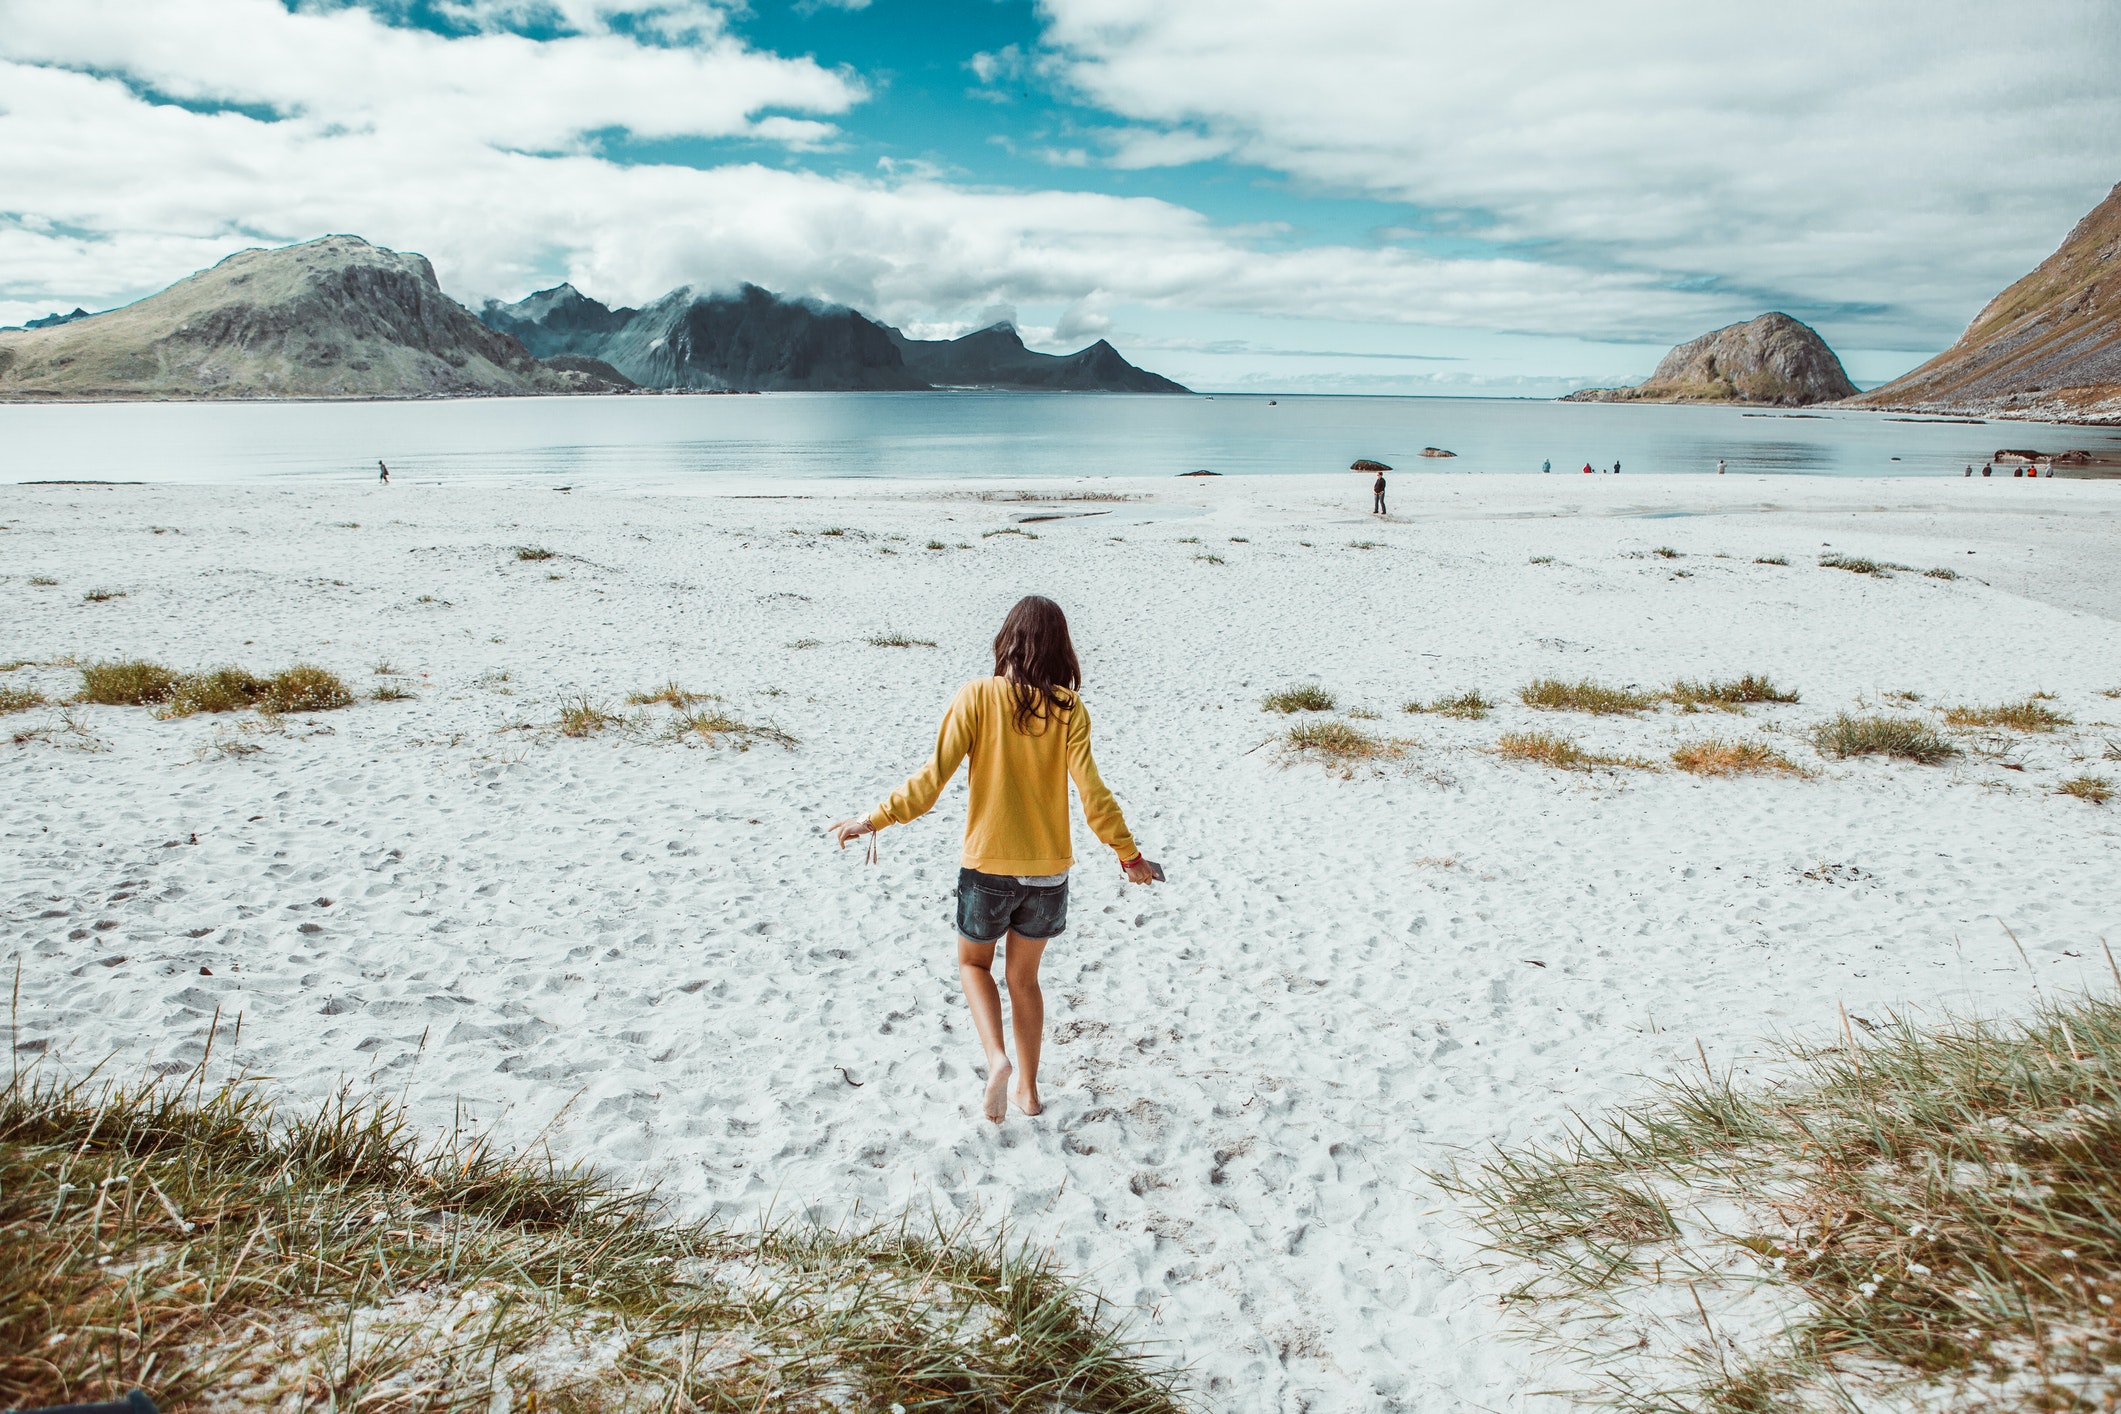 Image arrière d'un adolescent marchant seul sur une plage isolée en Norvège.